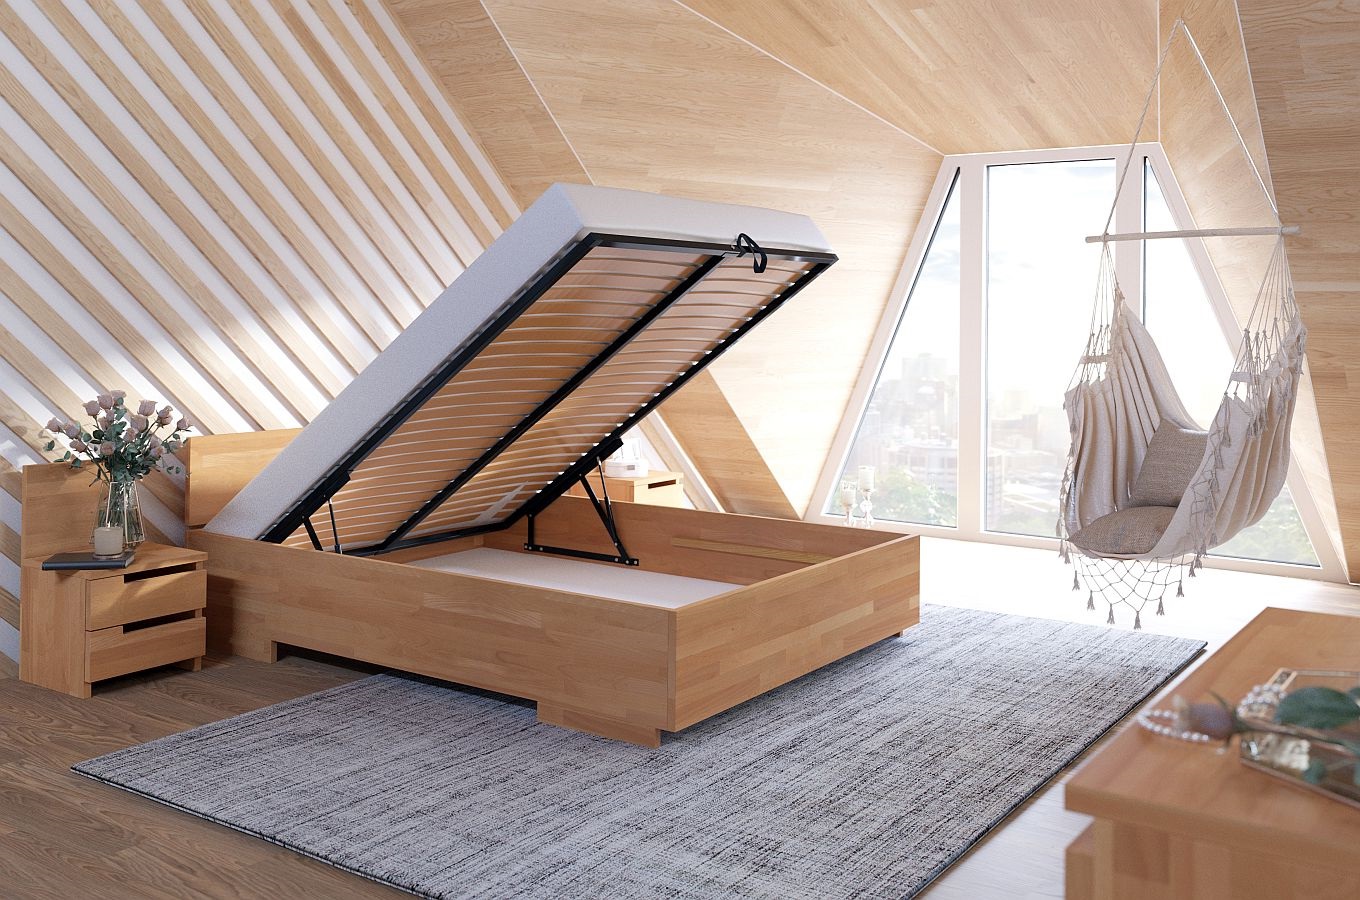 Łóżko drewniane bukowe Visby Bergman High BC Long (skrzynia na pościel) / 200x220 cm, kolor naturalny